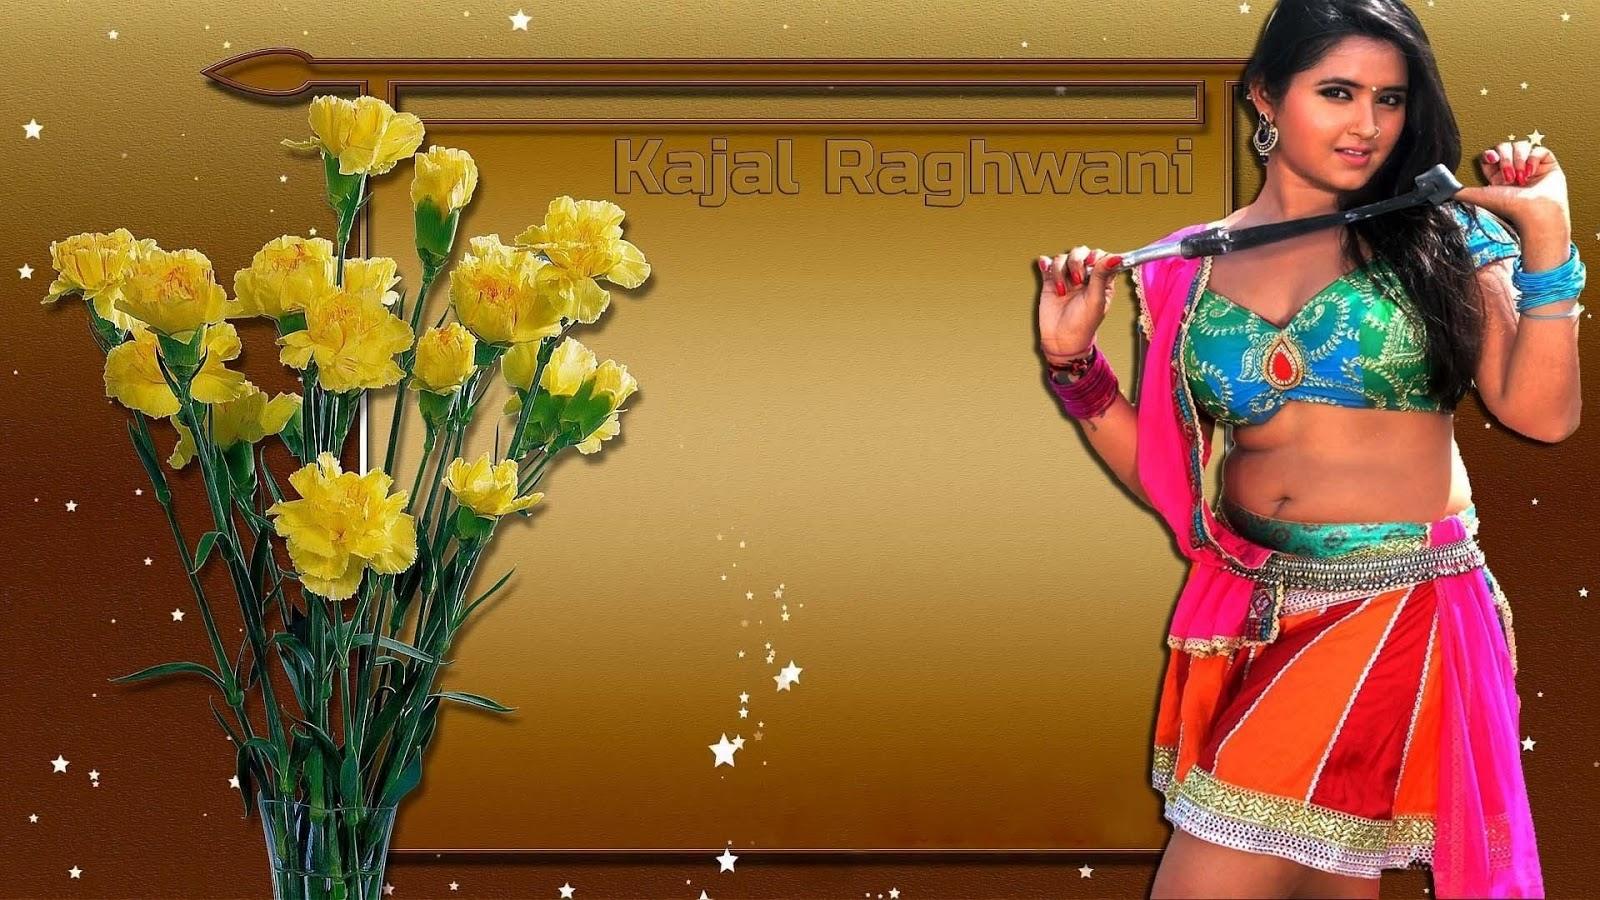 Kajal Raghwani Wallpaper, Kajal Raghwani HD Wallpaper, Kajal